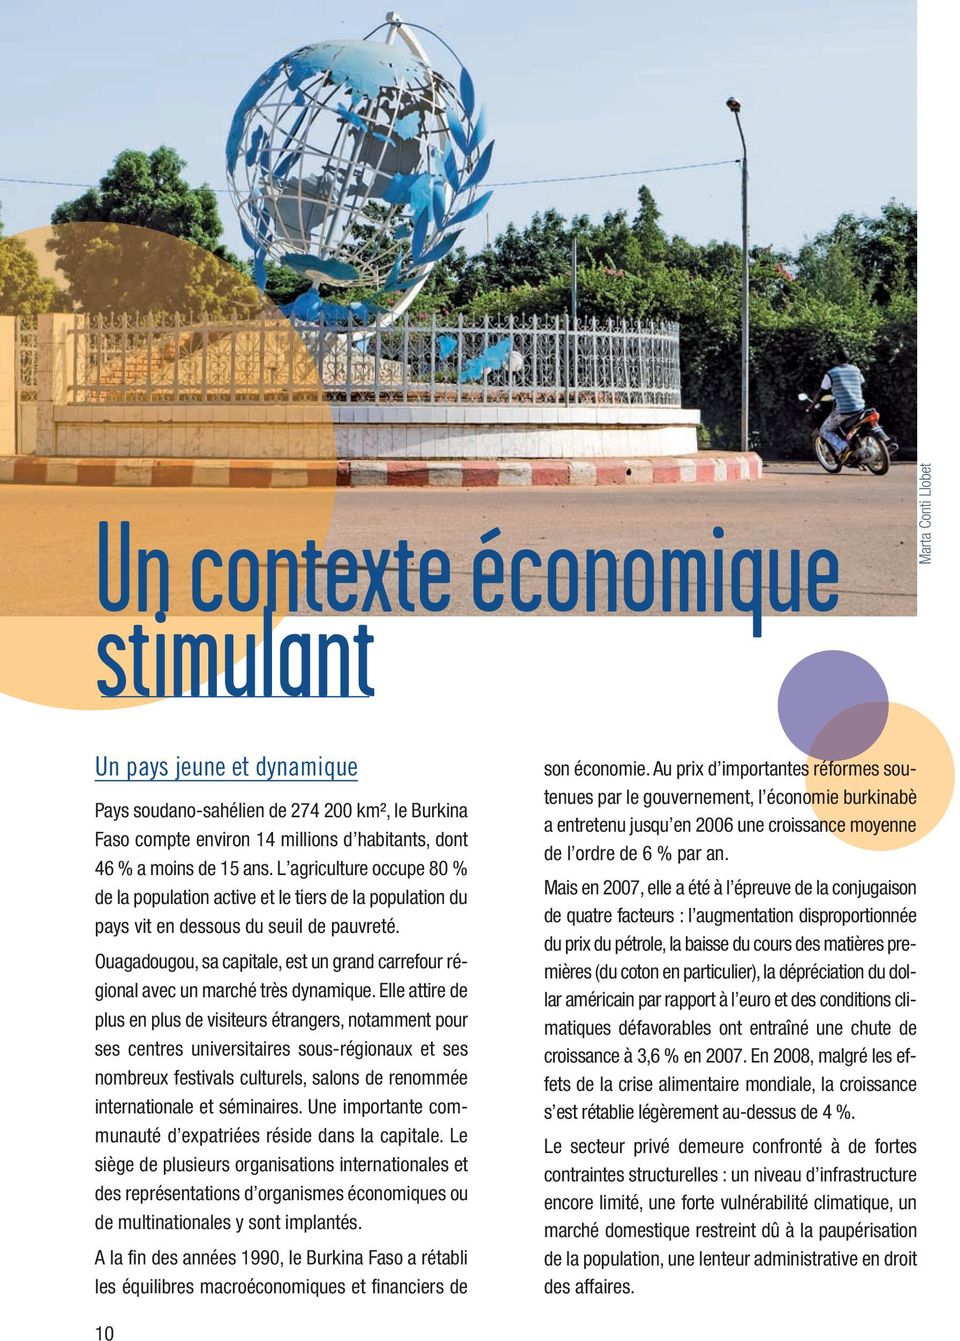 Ouagadougou, sa capitale, est un grand carrefour régional avec un marché très dynamique.